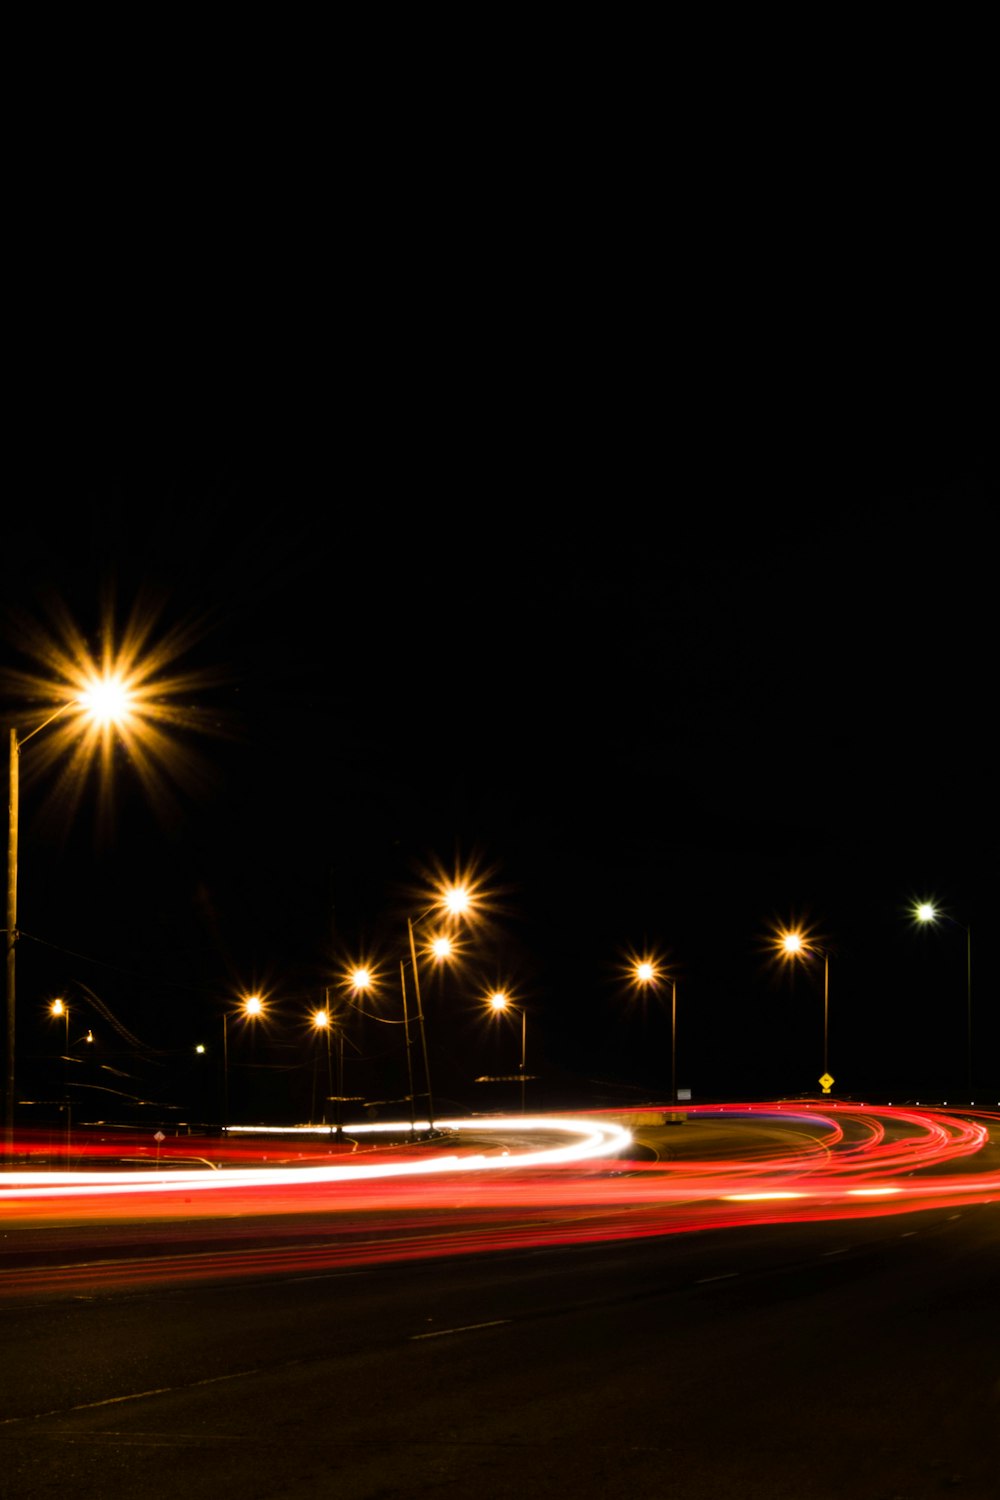 Fotografía de larga exposición de la carretera durante la noche